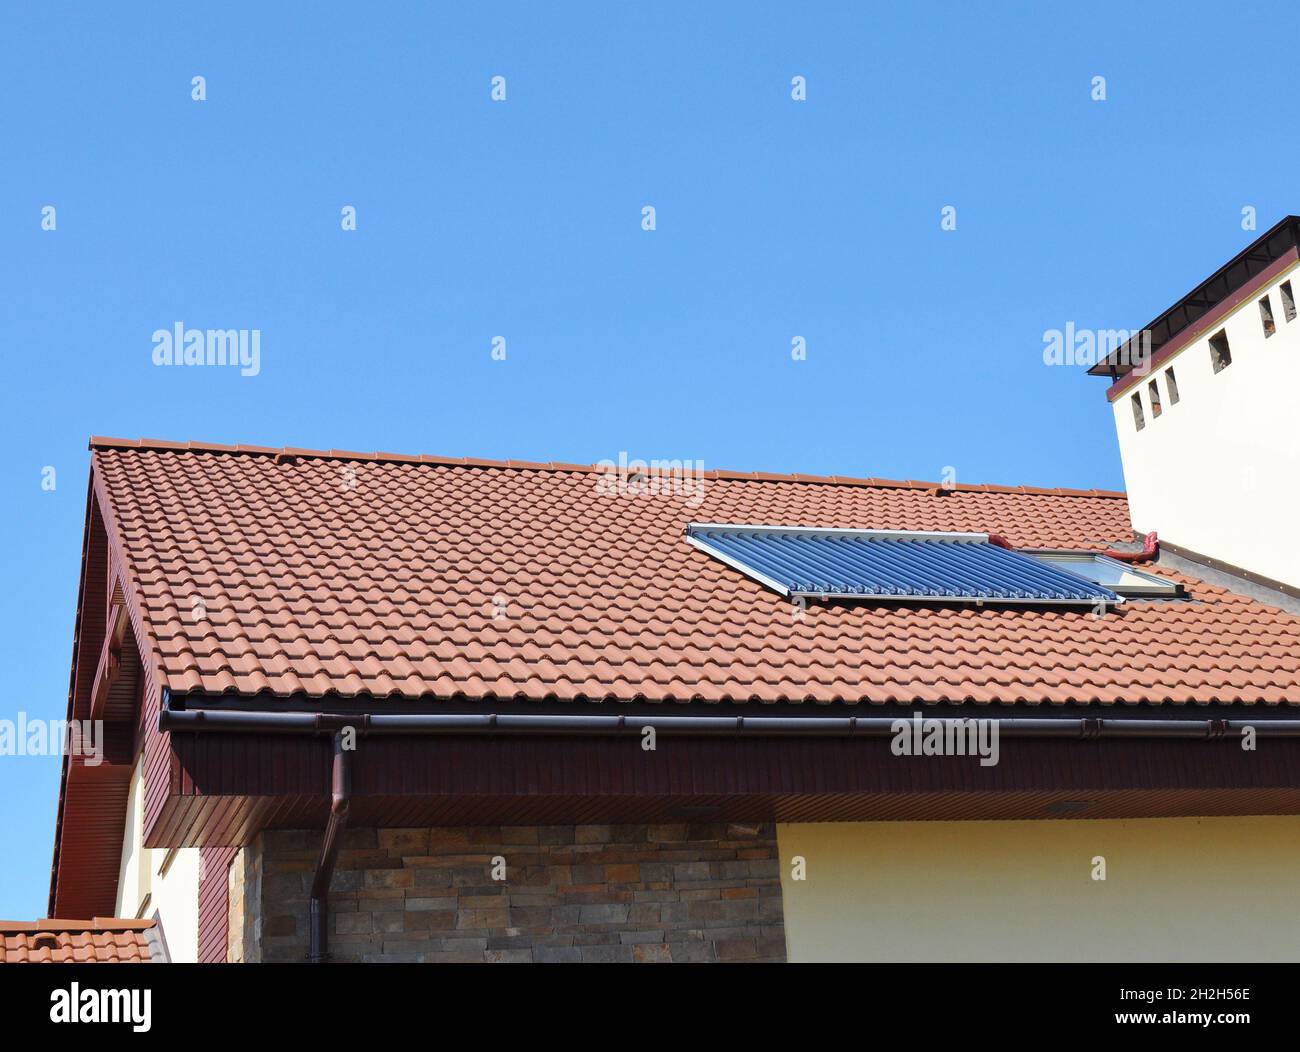 Nahaufnahme von Vakuum Solar Wasser Heizung System Regenrinne auf dem roten Ziegeldach. Soral Energy für Energieeffizienz Neues Hausbaukonzept Ou Stockfoto